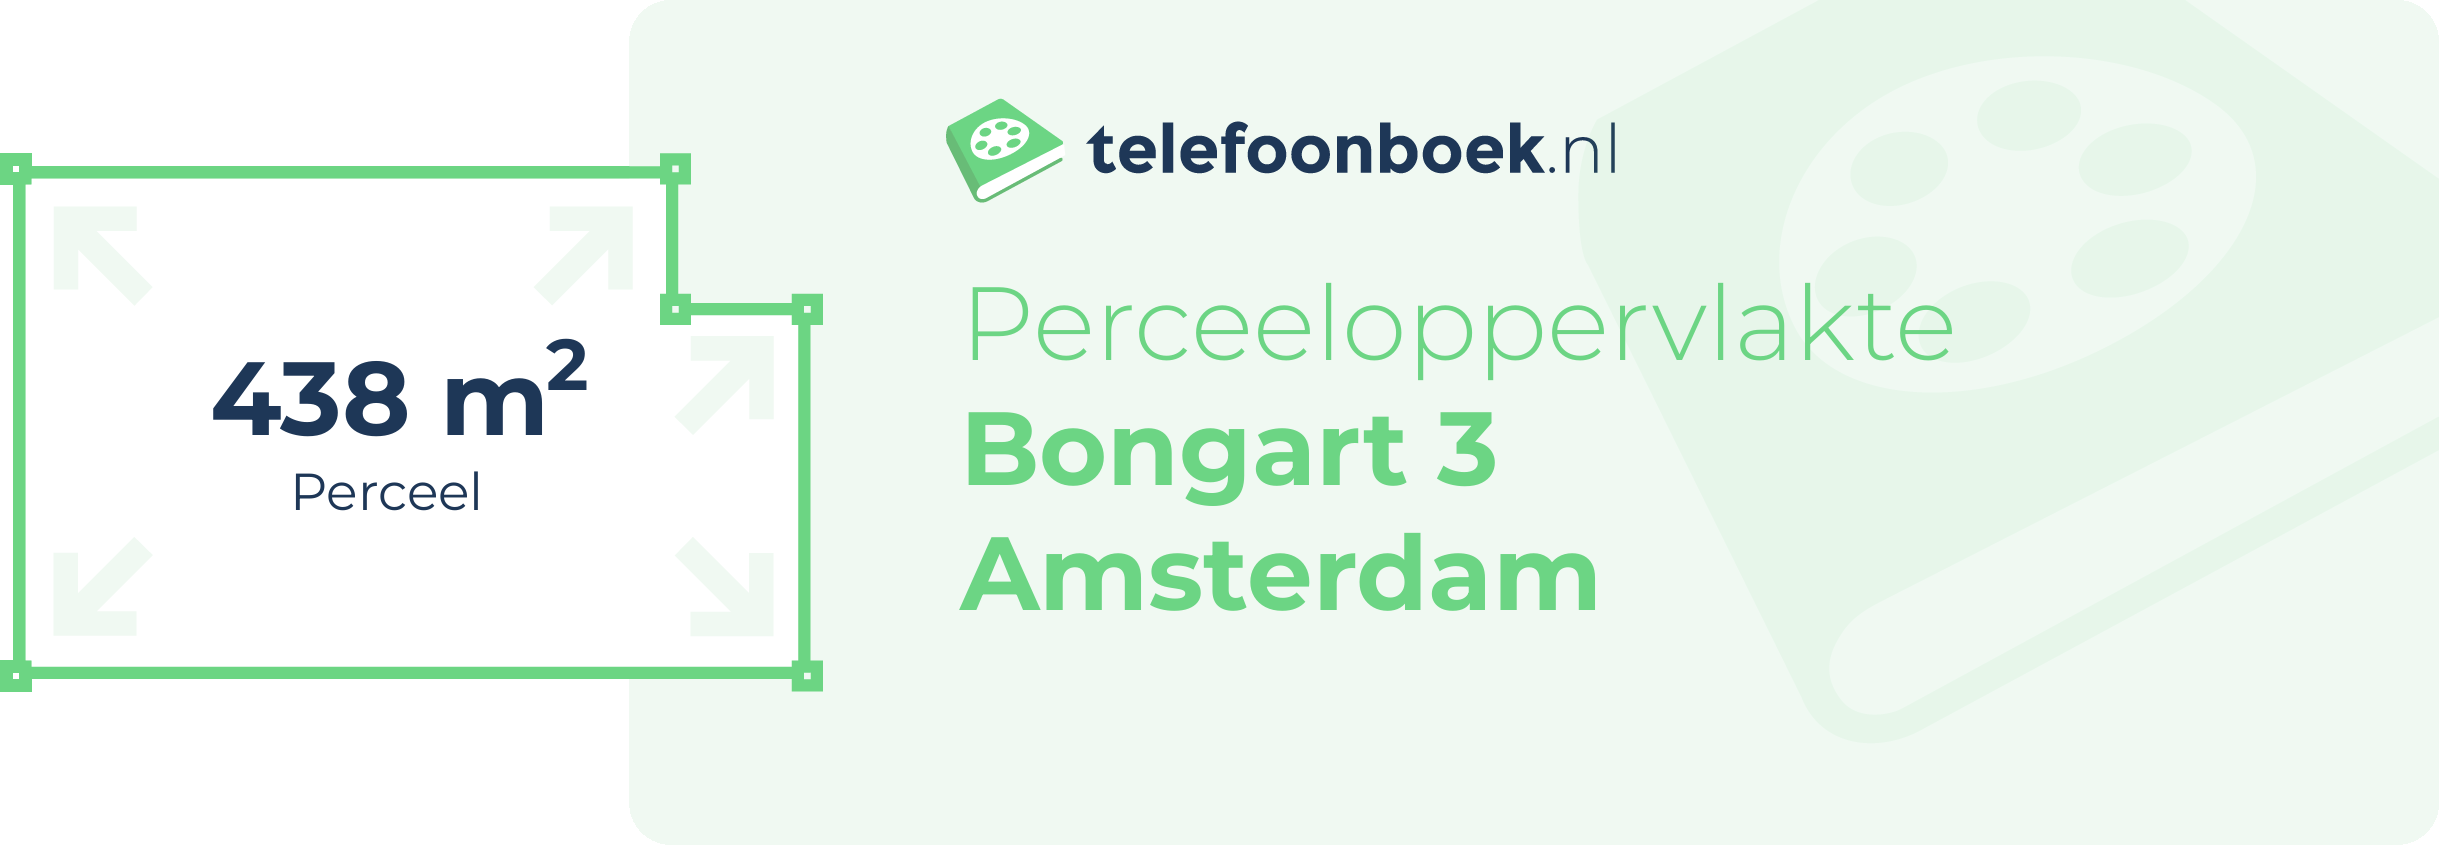 Perceeloppervlakte Bongart 3 Amsterdam